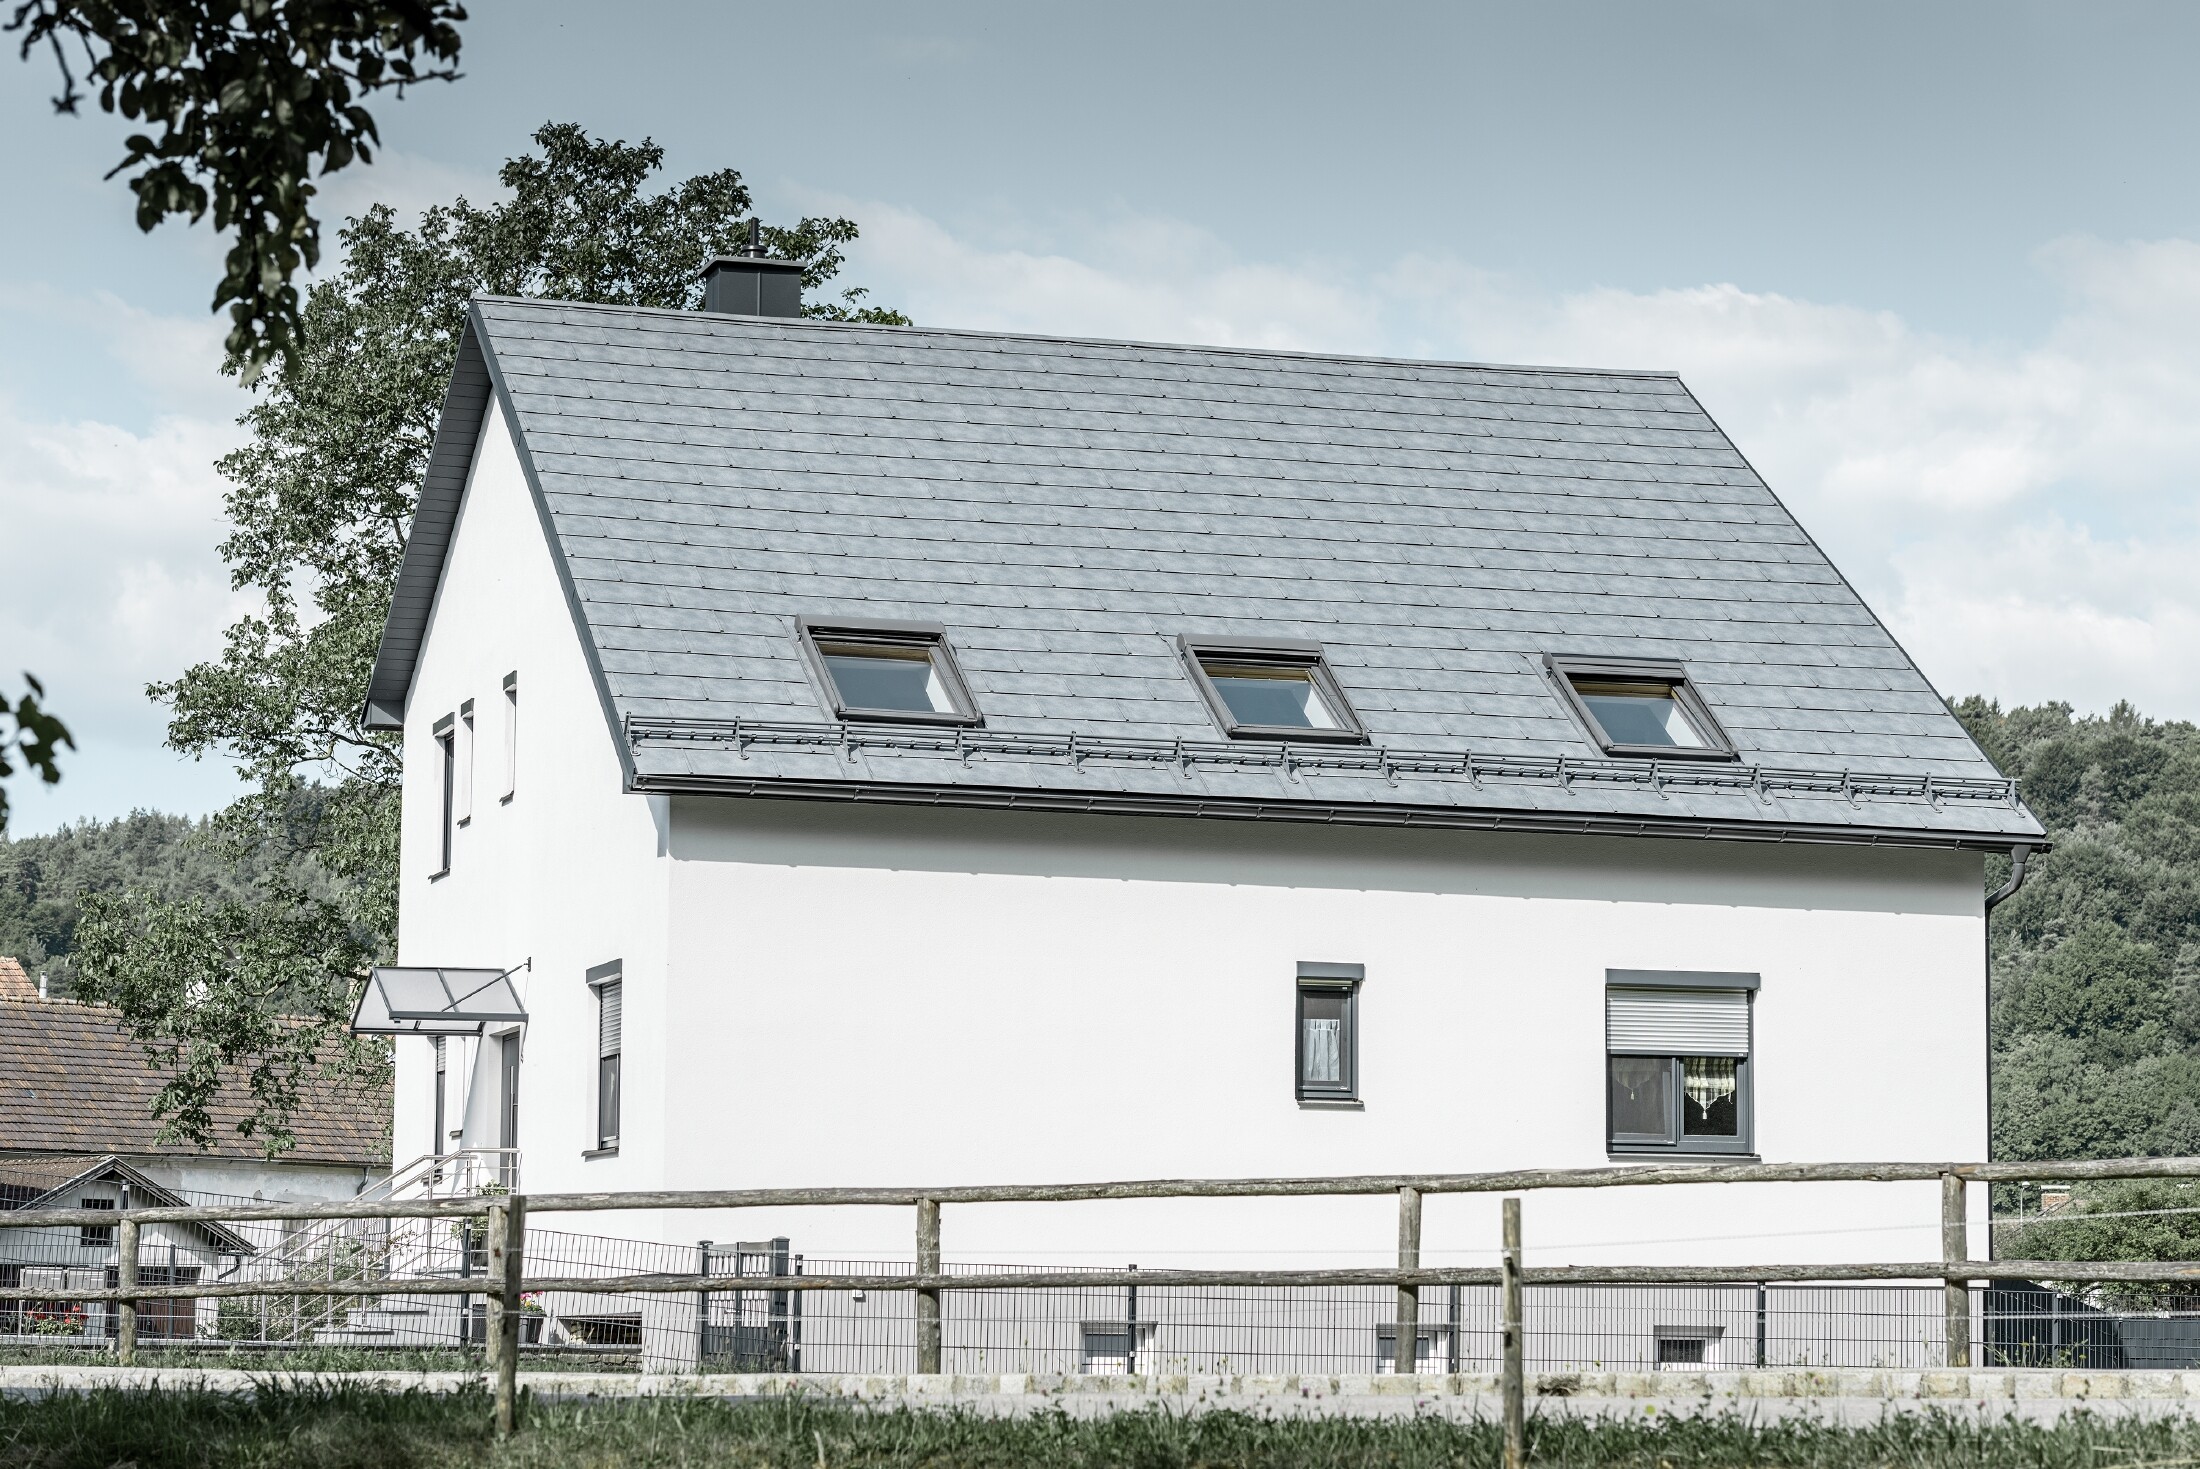 Sedlovou střechu klasického rodinného domu pokryl nový střešní panel PREFA R.16 v barvě P.10 břidlicové. Na ploše střechy se nachází také tři světlíky a protisněhové prvky. Fasáda je v bílé barvě.